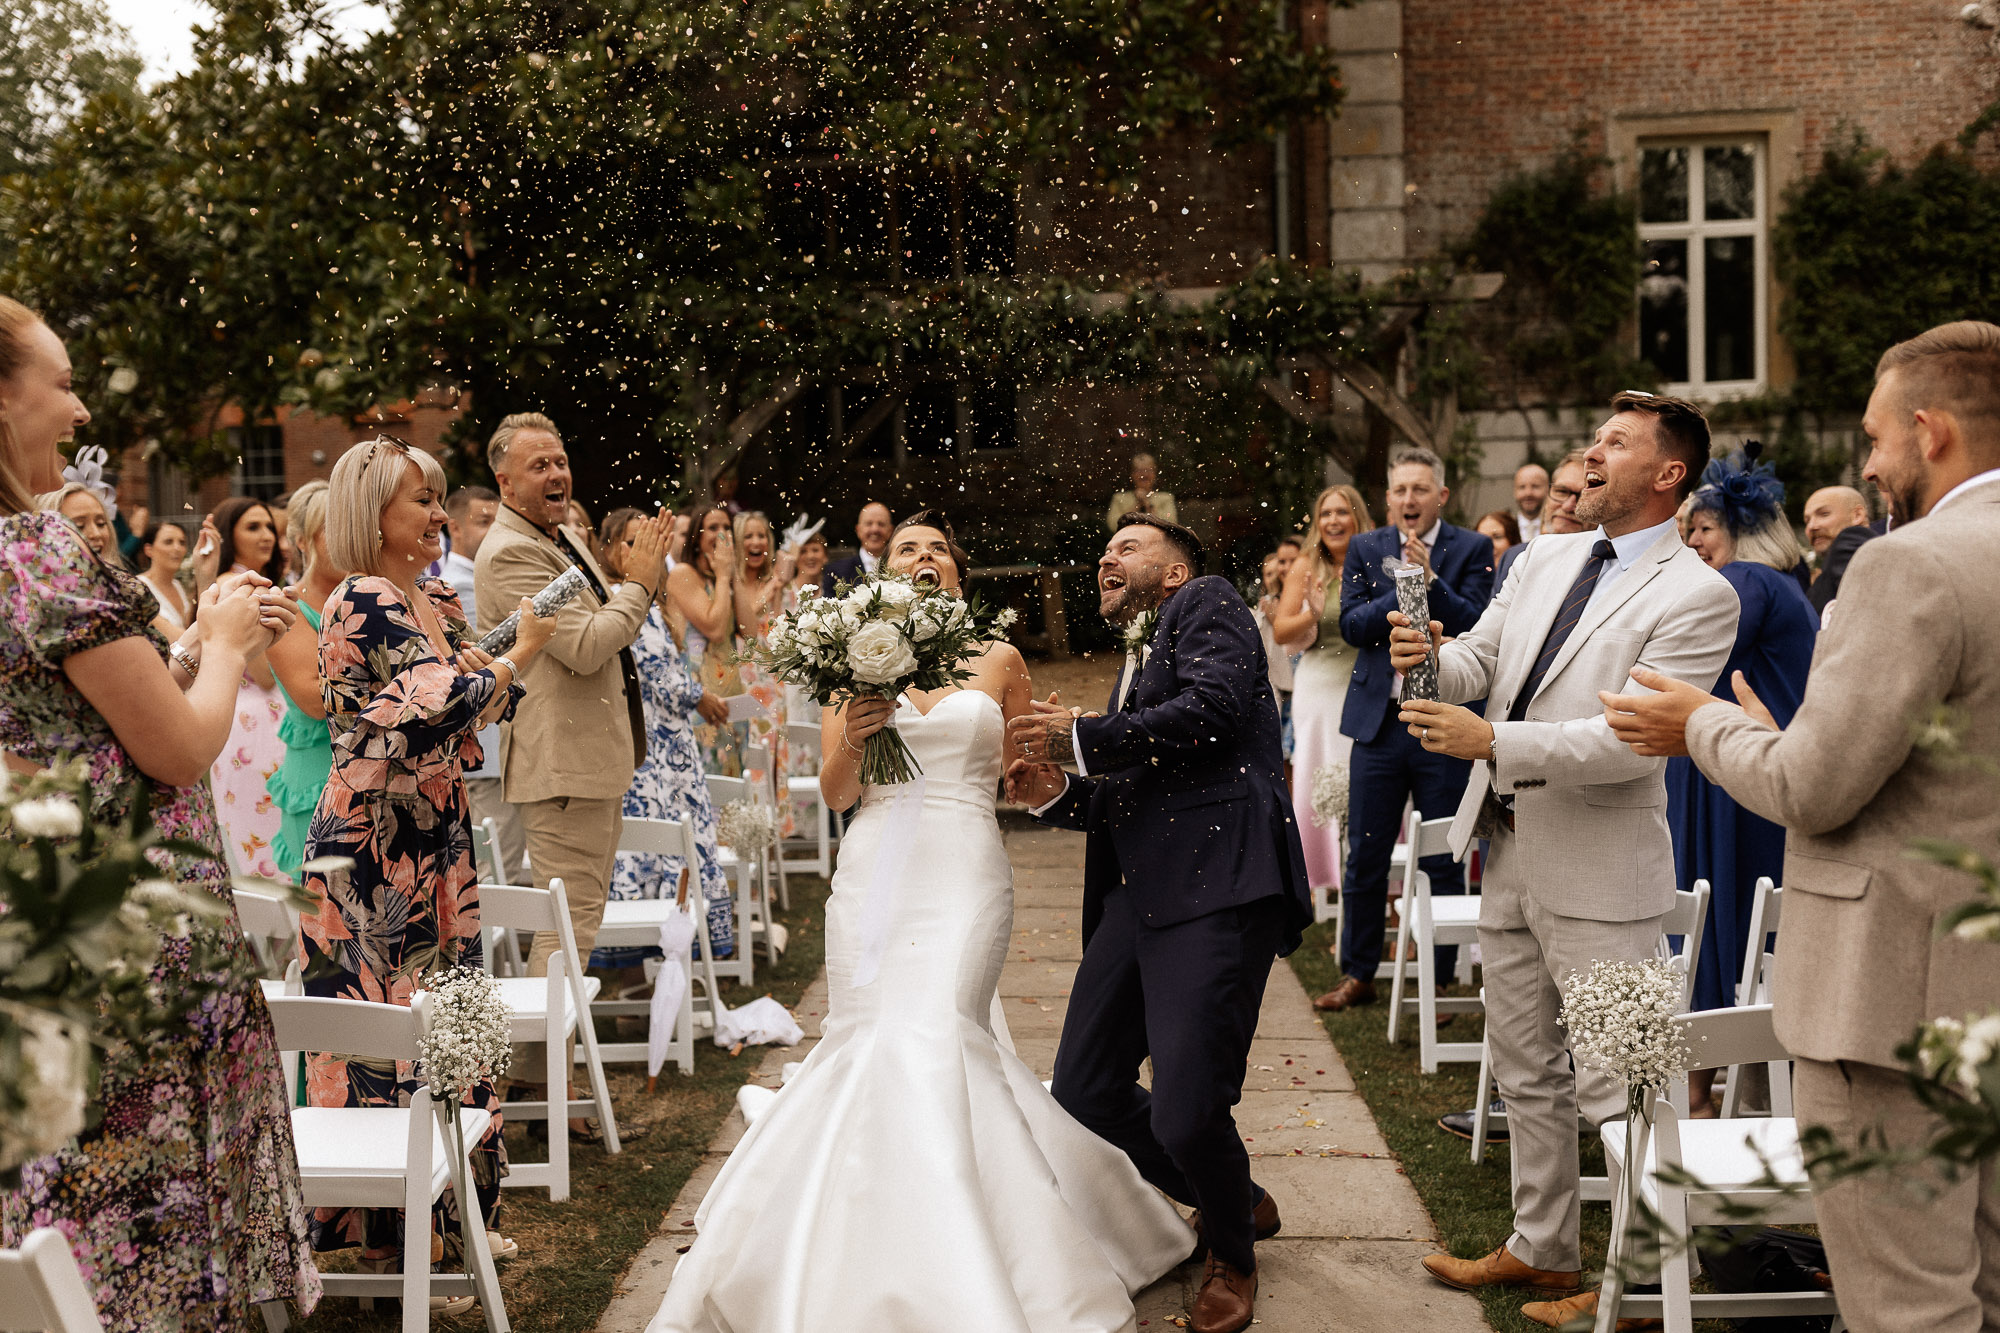 confetti attack on bride and groom